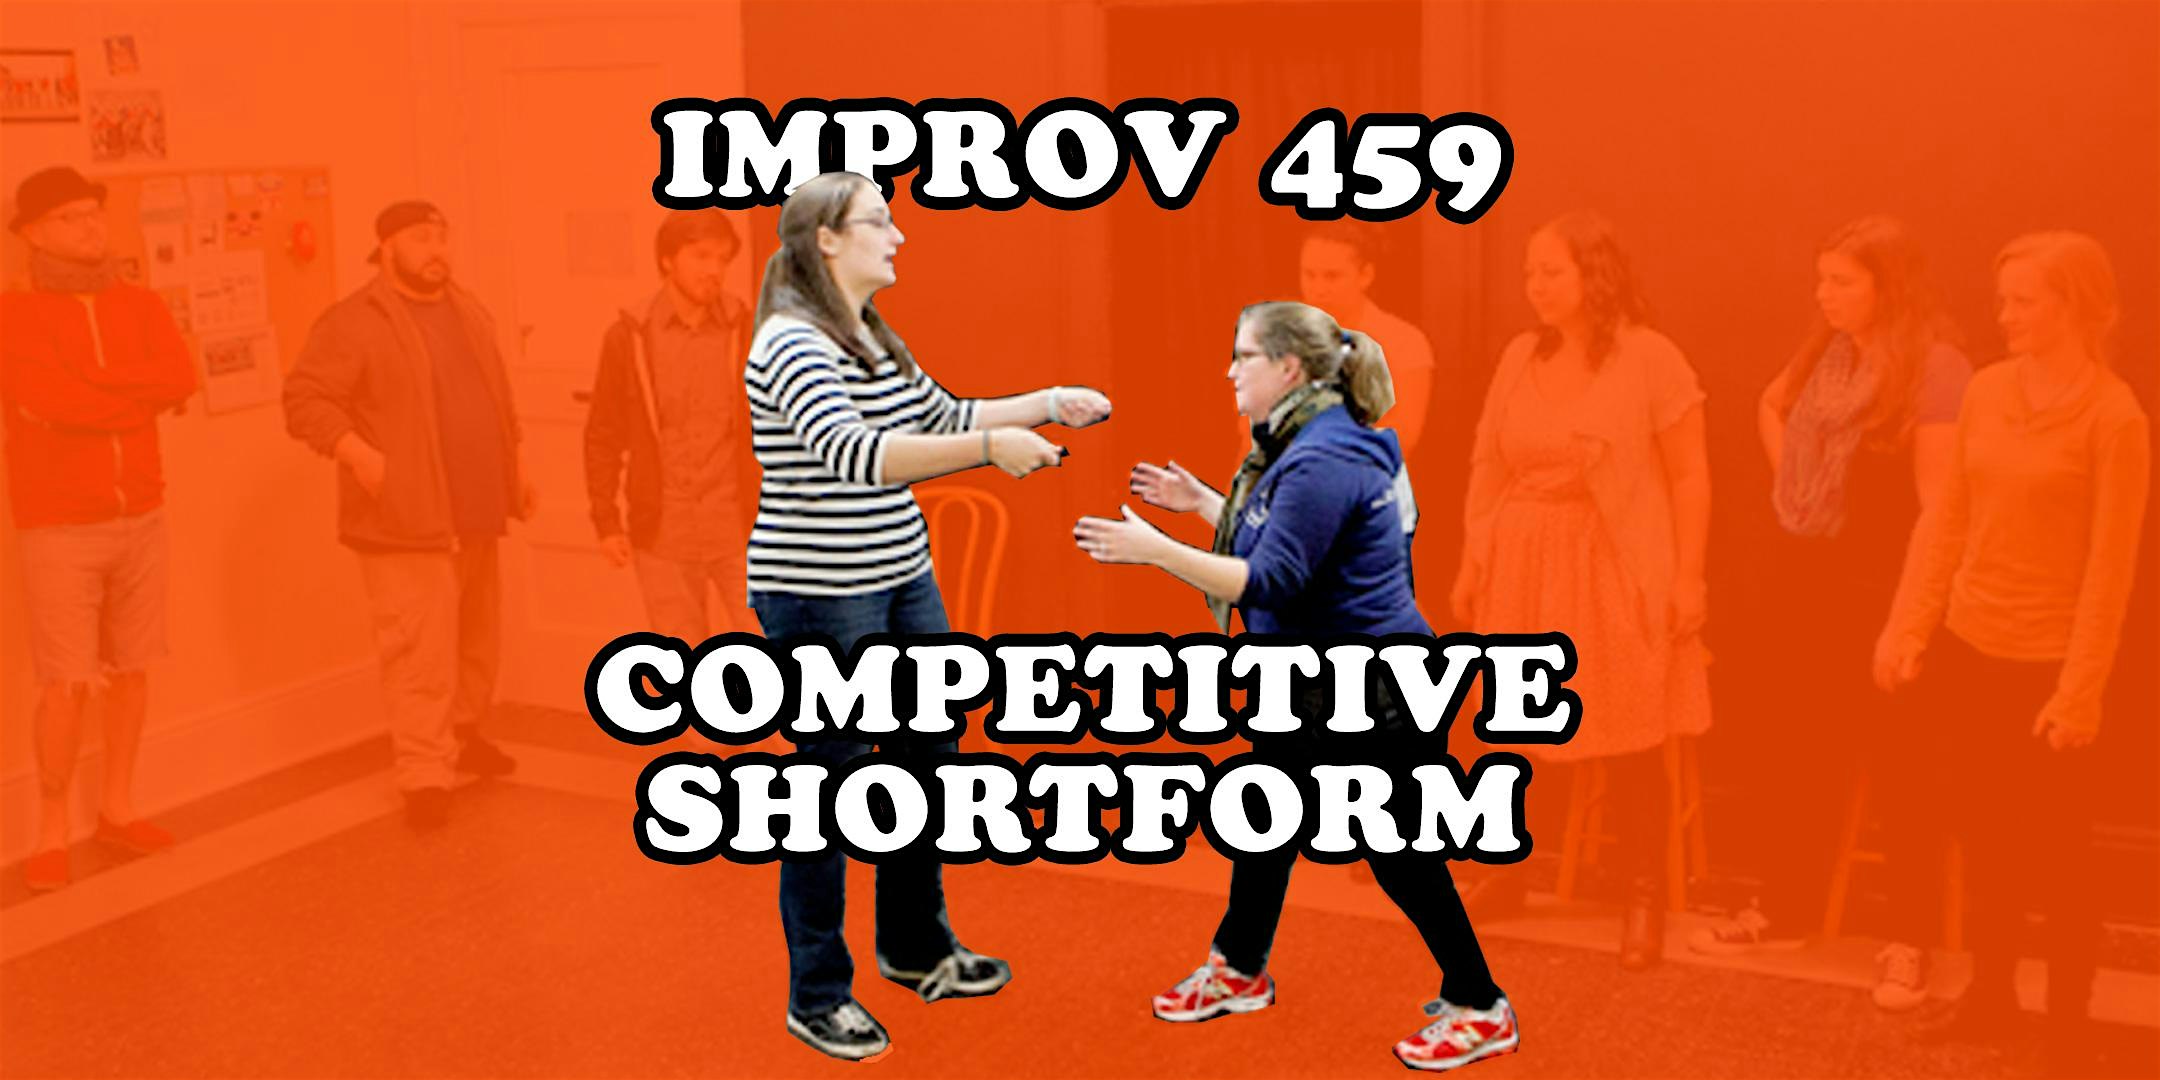 Improv 459 - Competitive Shortform